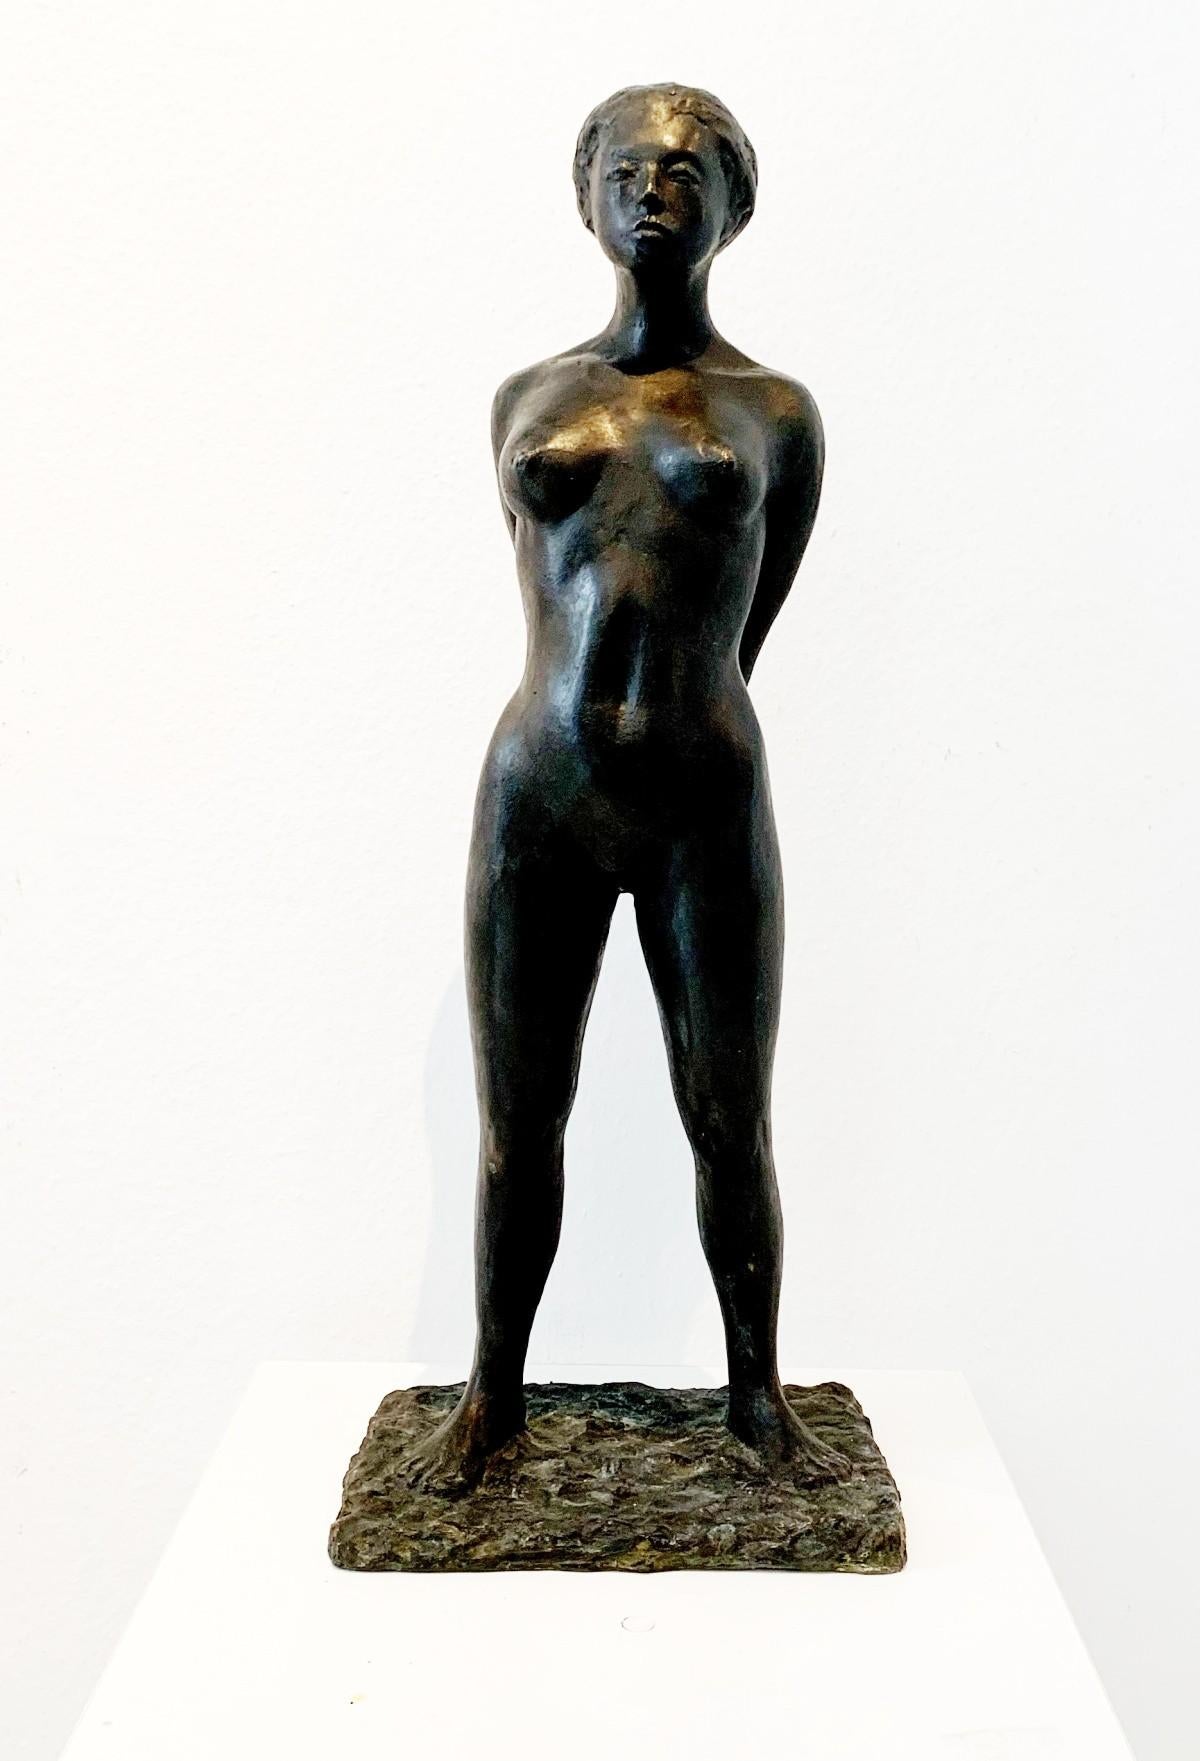 Ryszard Piotrowski Nude Sculpture - Woman - 21st Century, Contemporary Bronze Figurative Sculpture, Female Nude